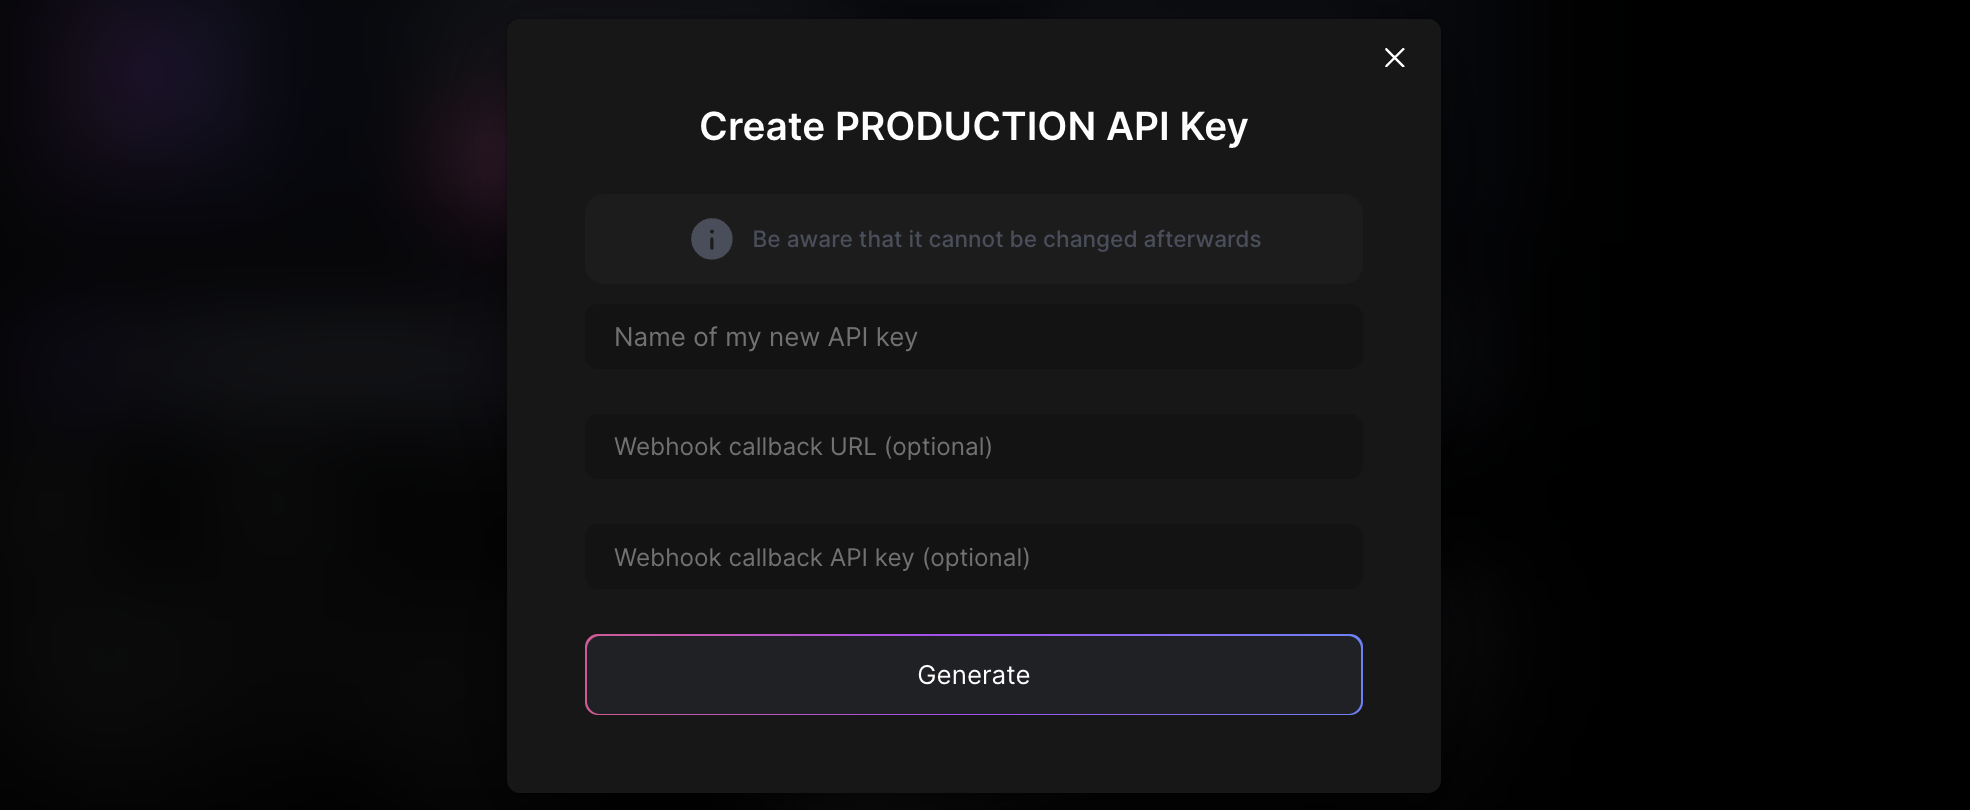 Webhook URL and webhook API key is set during production API key creation.